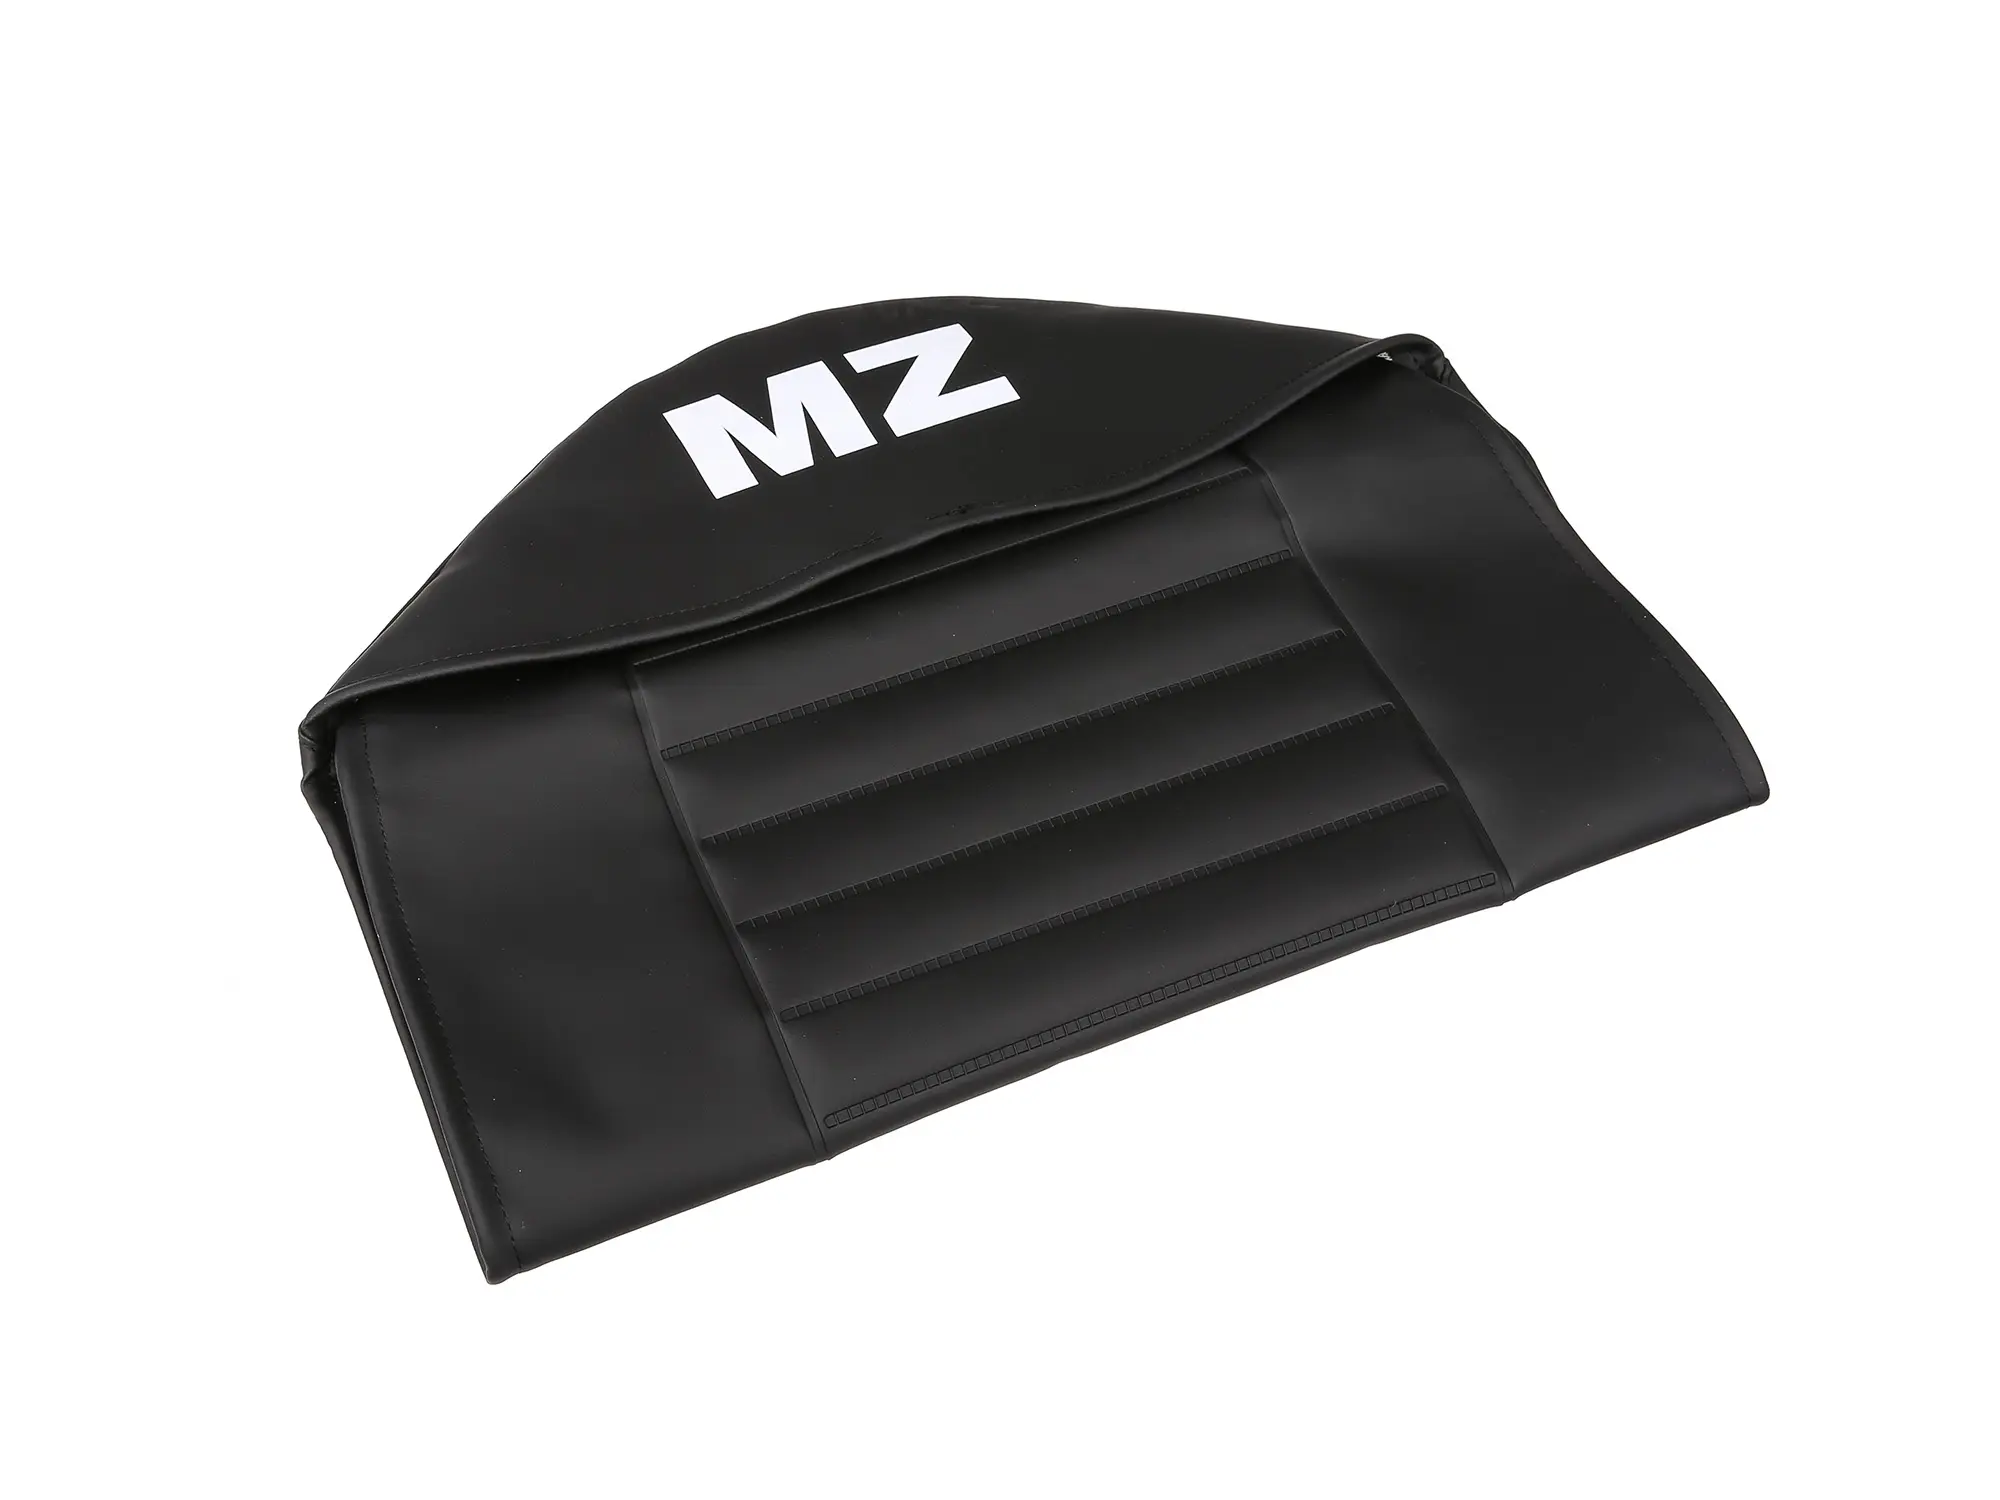 Sitzbezug strukturiert, schwarz mit MZ-Schriftzug - für MZ TS125, TS150, Art.-Nr.: 10055999 - Bild 1